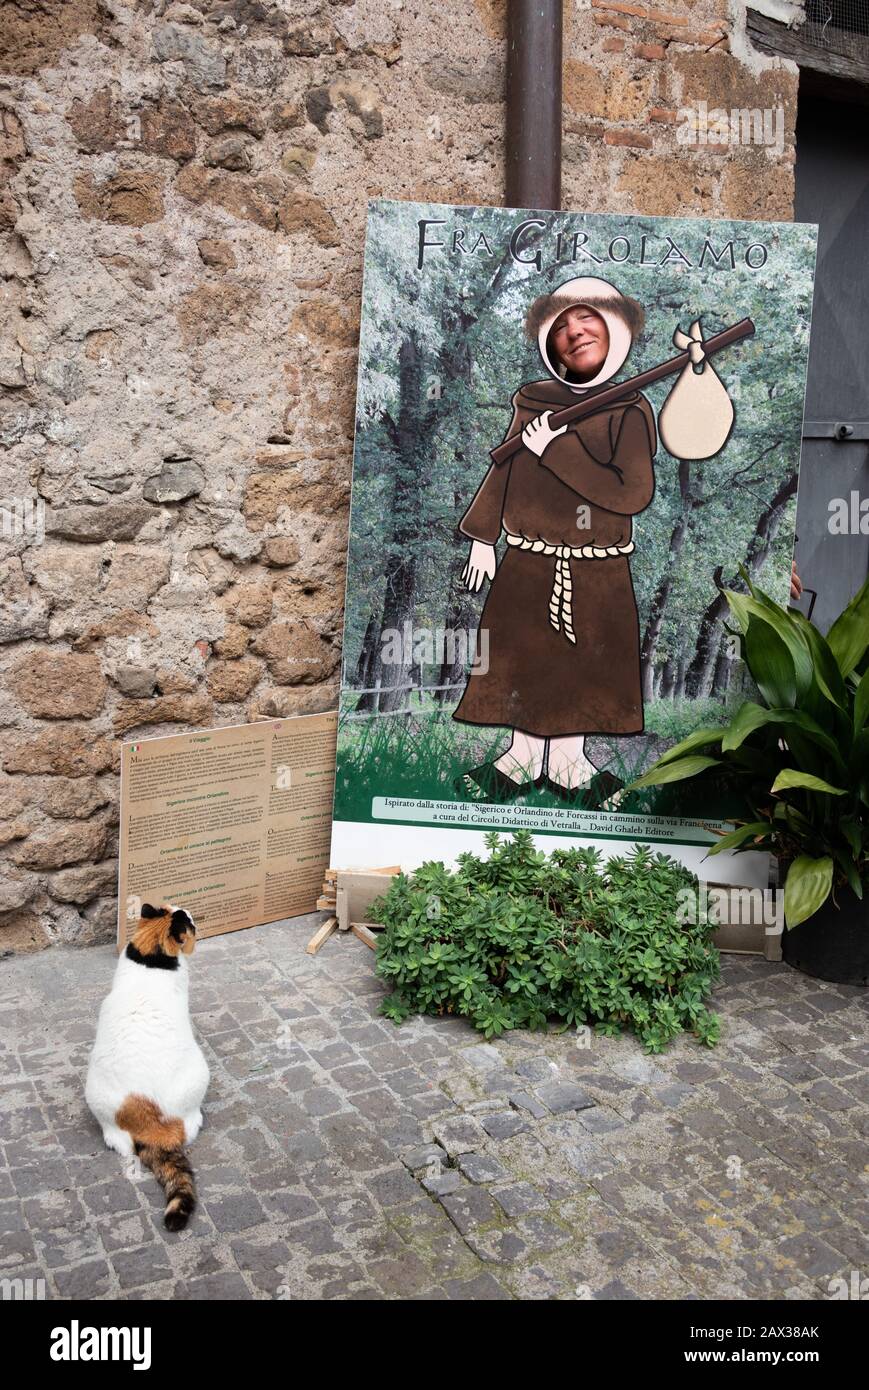 Cara de corazón claro en el tablero del agujero con la cabeza de la persona y el gato mirando a ellos. Vetralla. FRA girolamo Savonarola, fraile dominicano y fanático puritano. Foto de stock